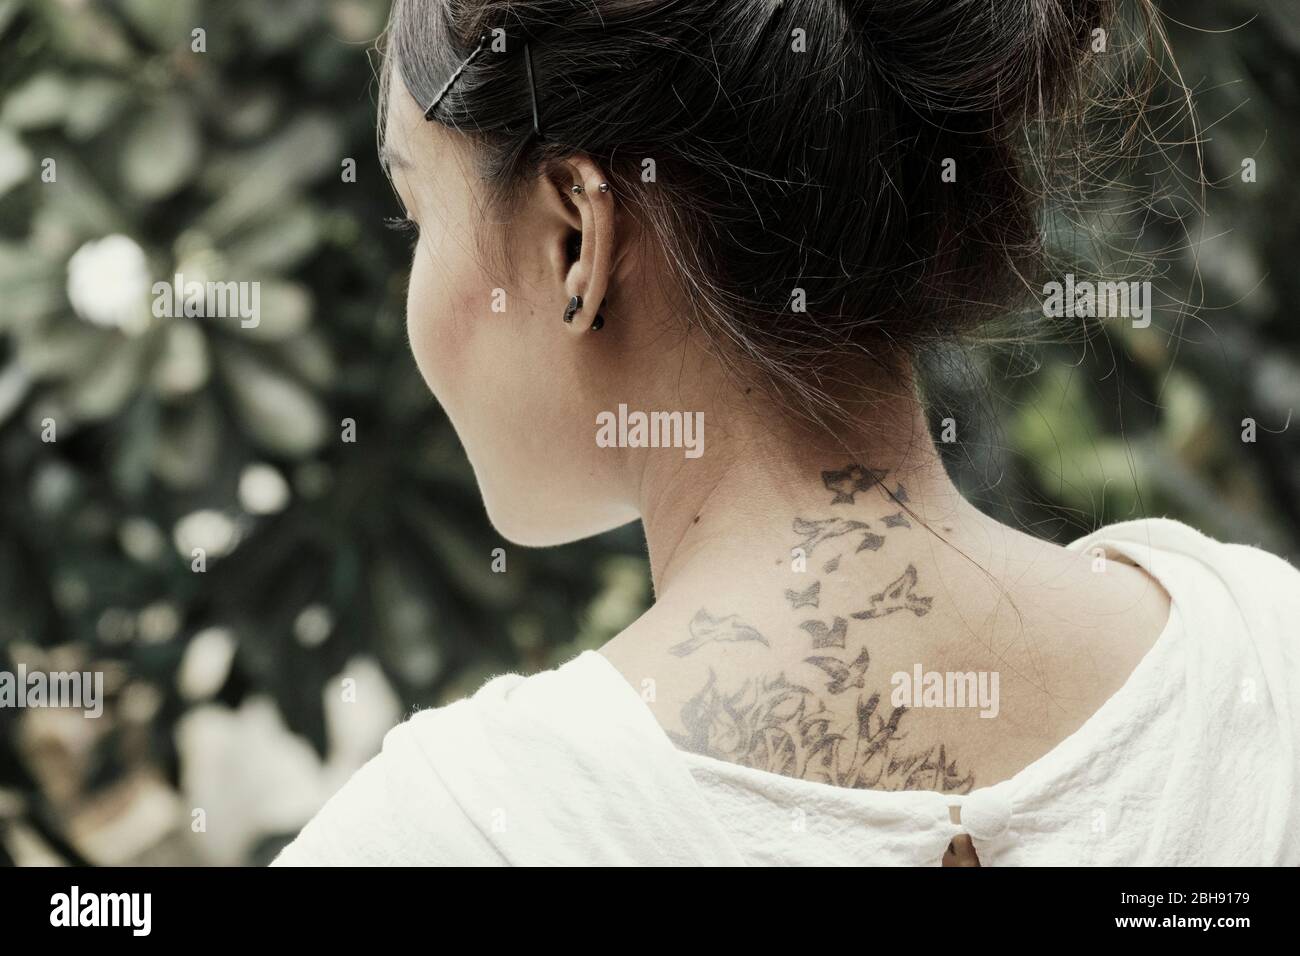 Jeune fille thaïlandaise avec tatouage sur son cou Banque D'Images